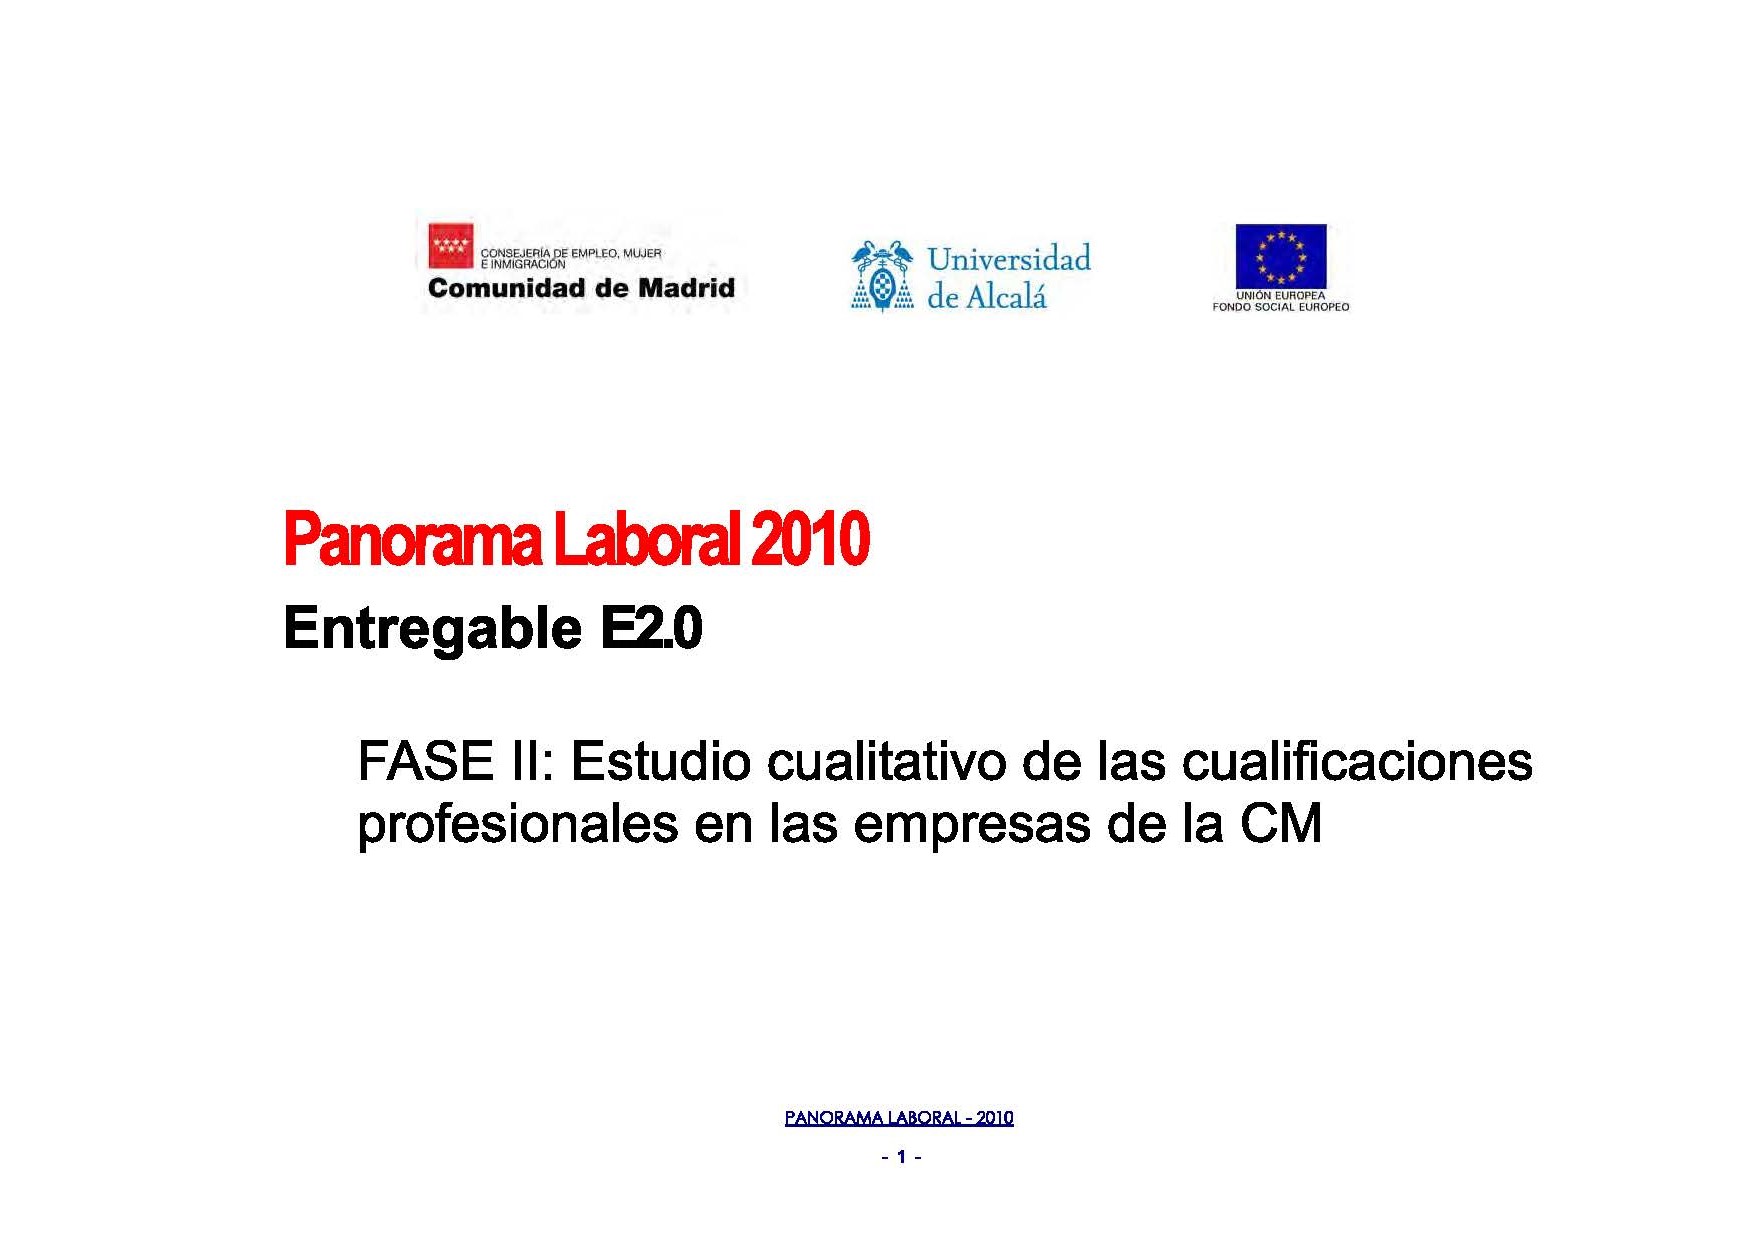 Portada de Panorama Laboral 2010. Estudio cualitativo de las cualificaciones profesionales en las empresas de la Comunidad de Madrid 2010